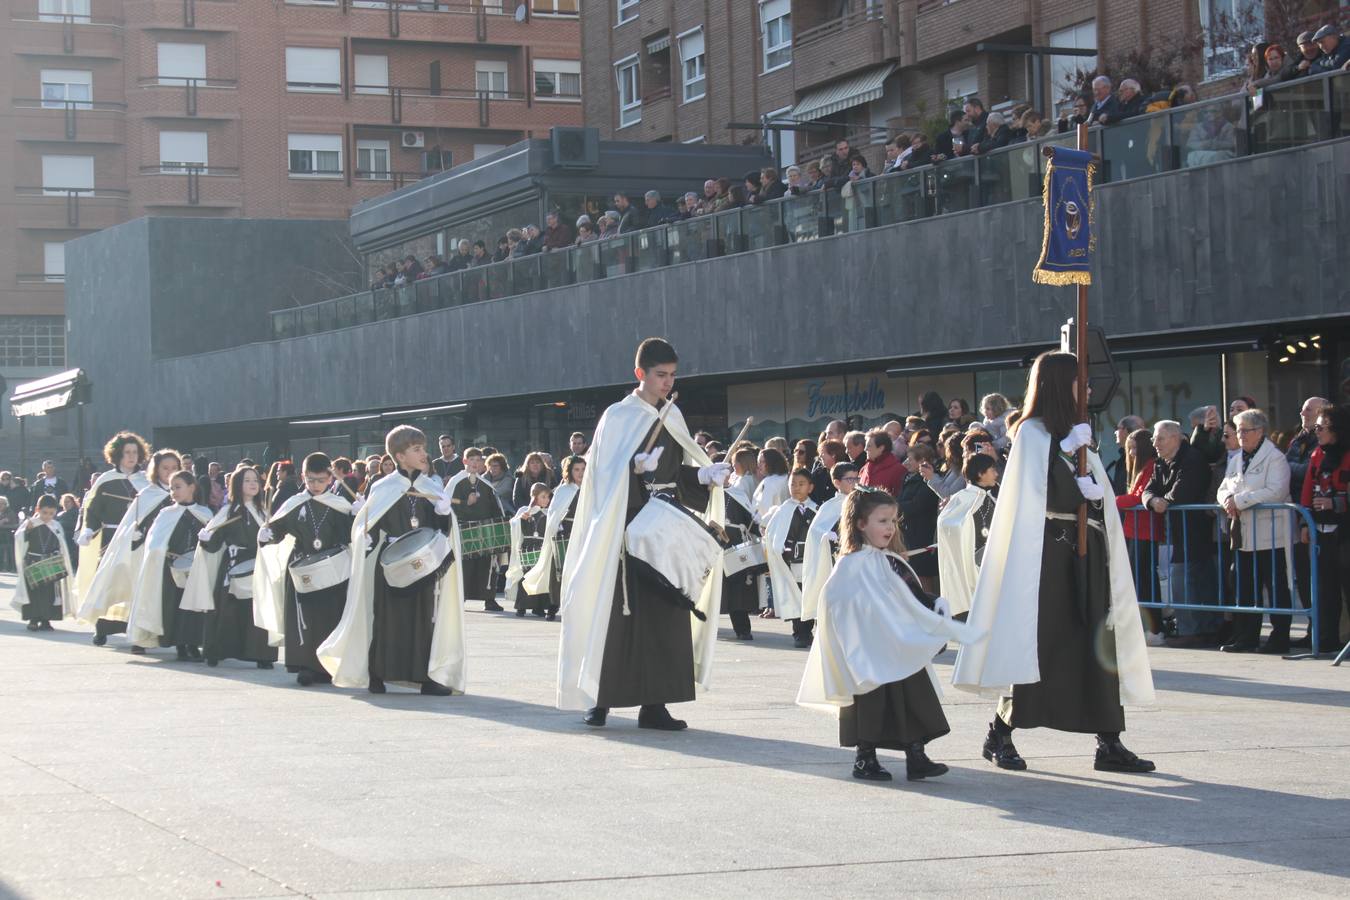 La exaltación de bandas de las cofradías anuncia la Semana Santa en Arnedo.